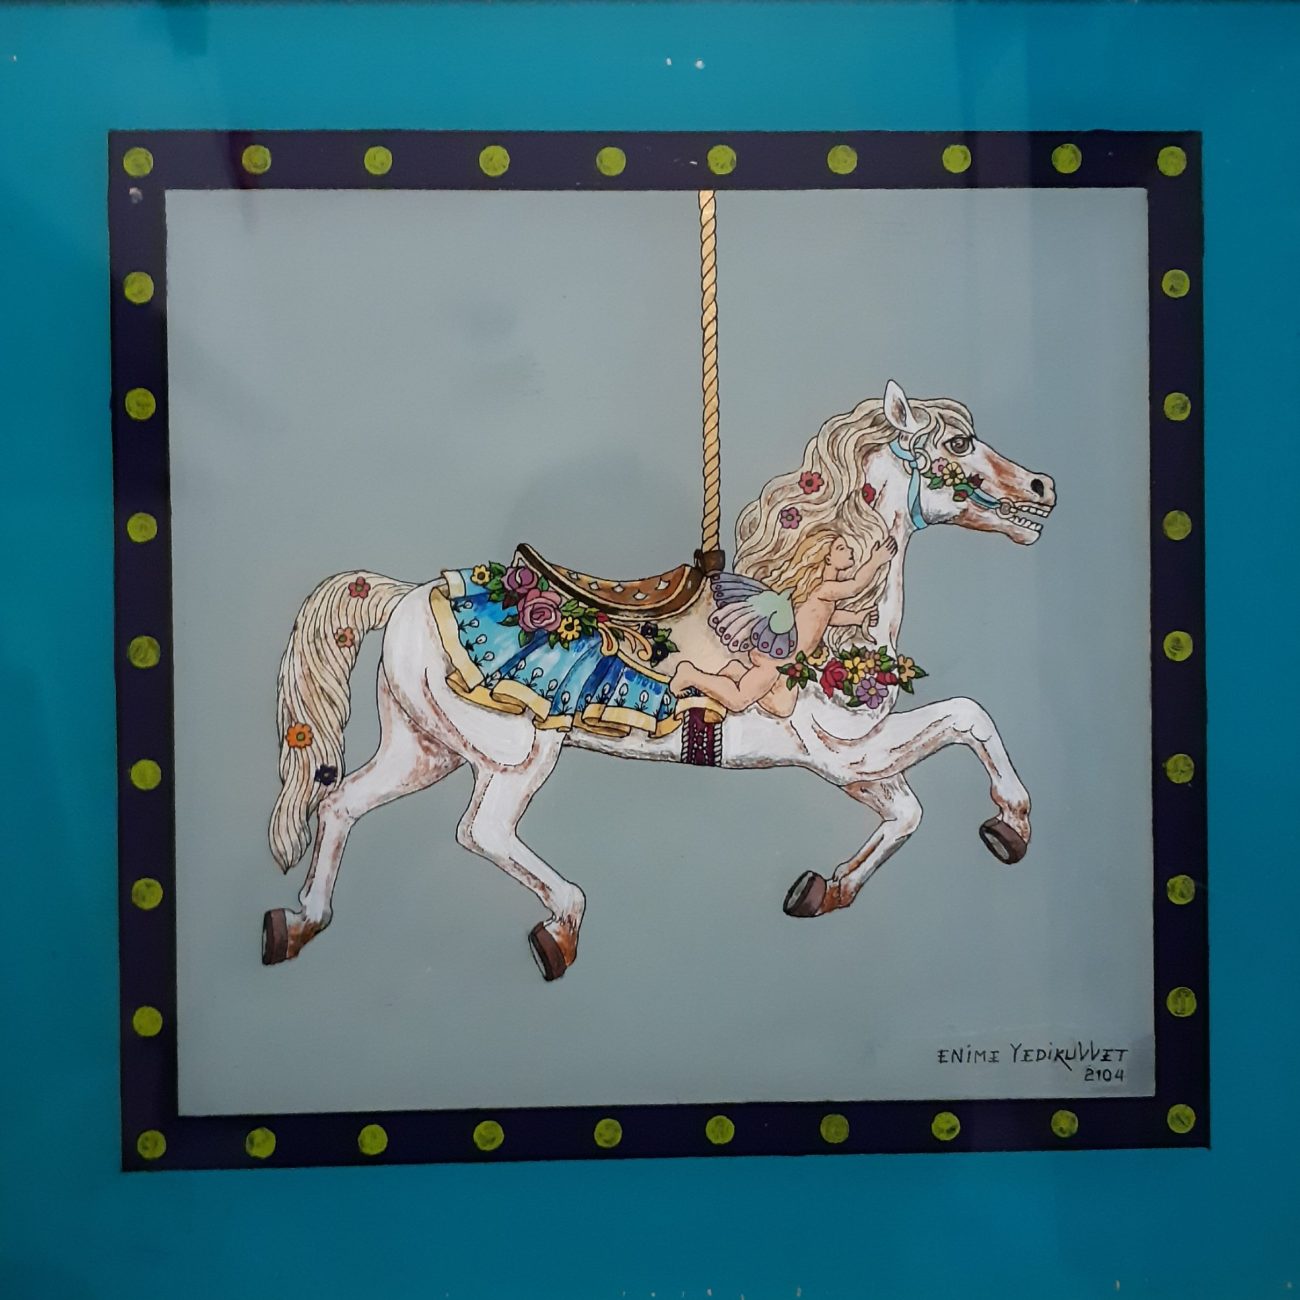 EMİNE YEDİKUVVET “Atlı karınca atı (Melekle koşu)” 46 x 44 cm. Cam altı resim 11.000 ₺ + KDV